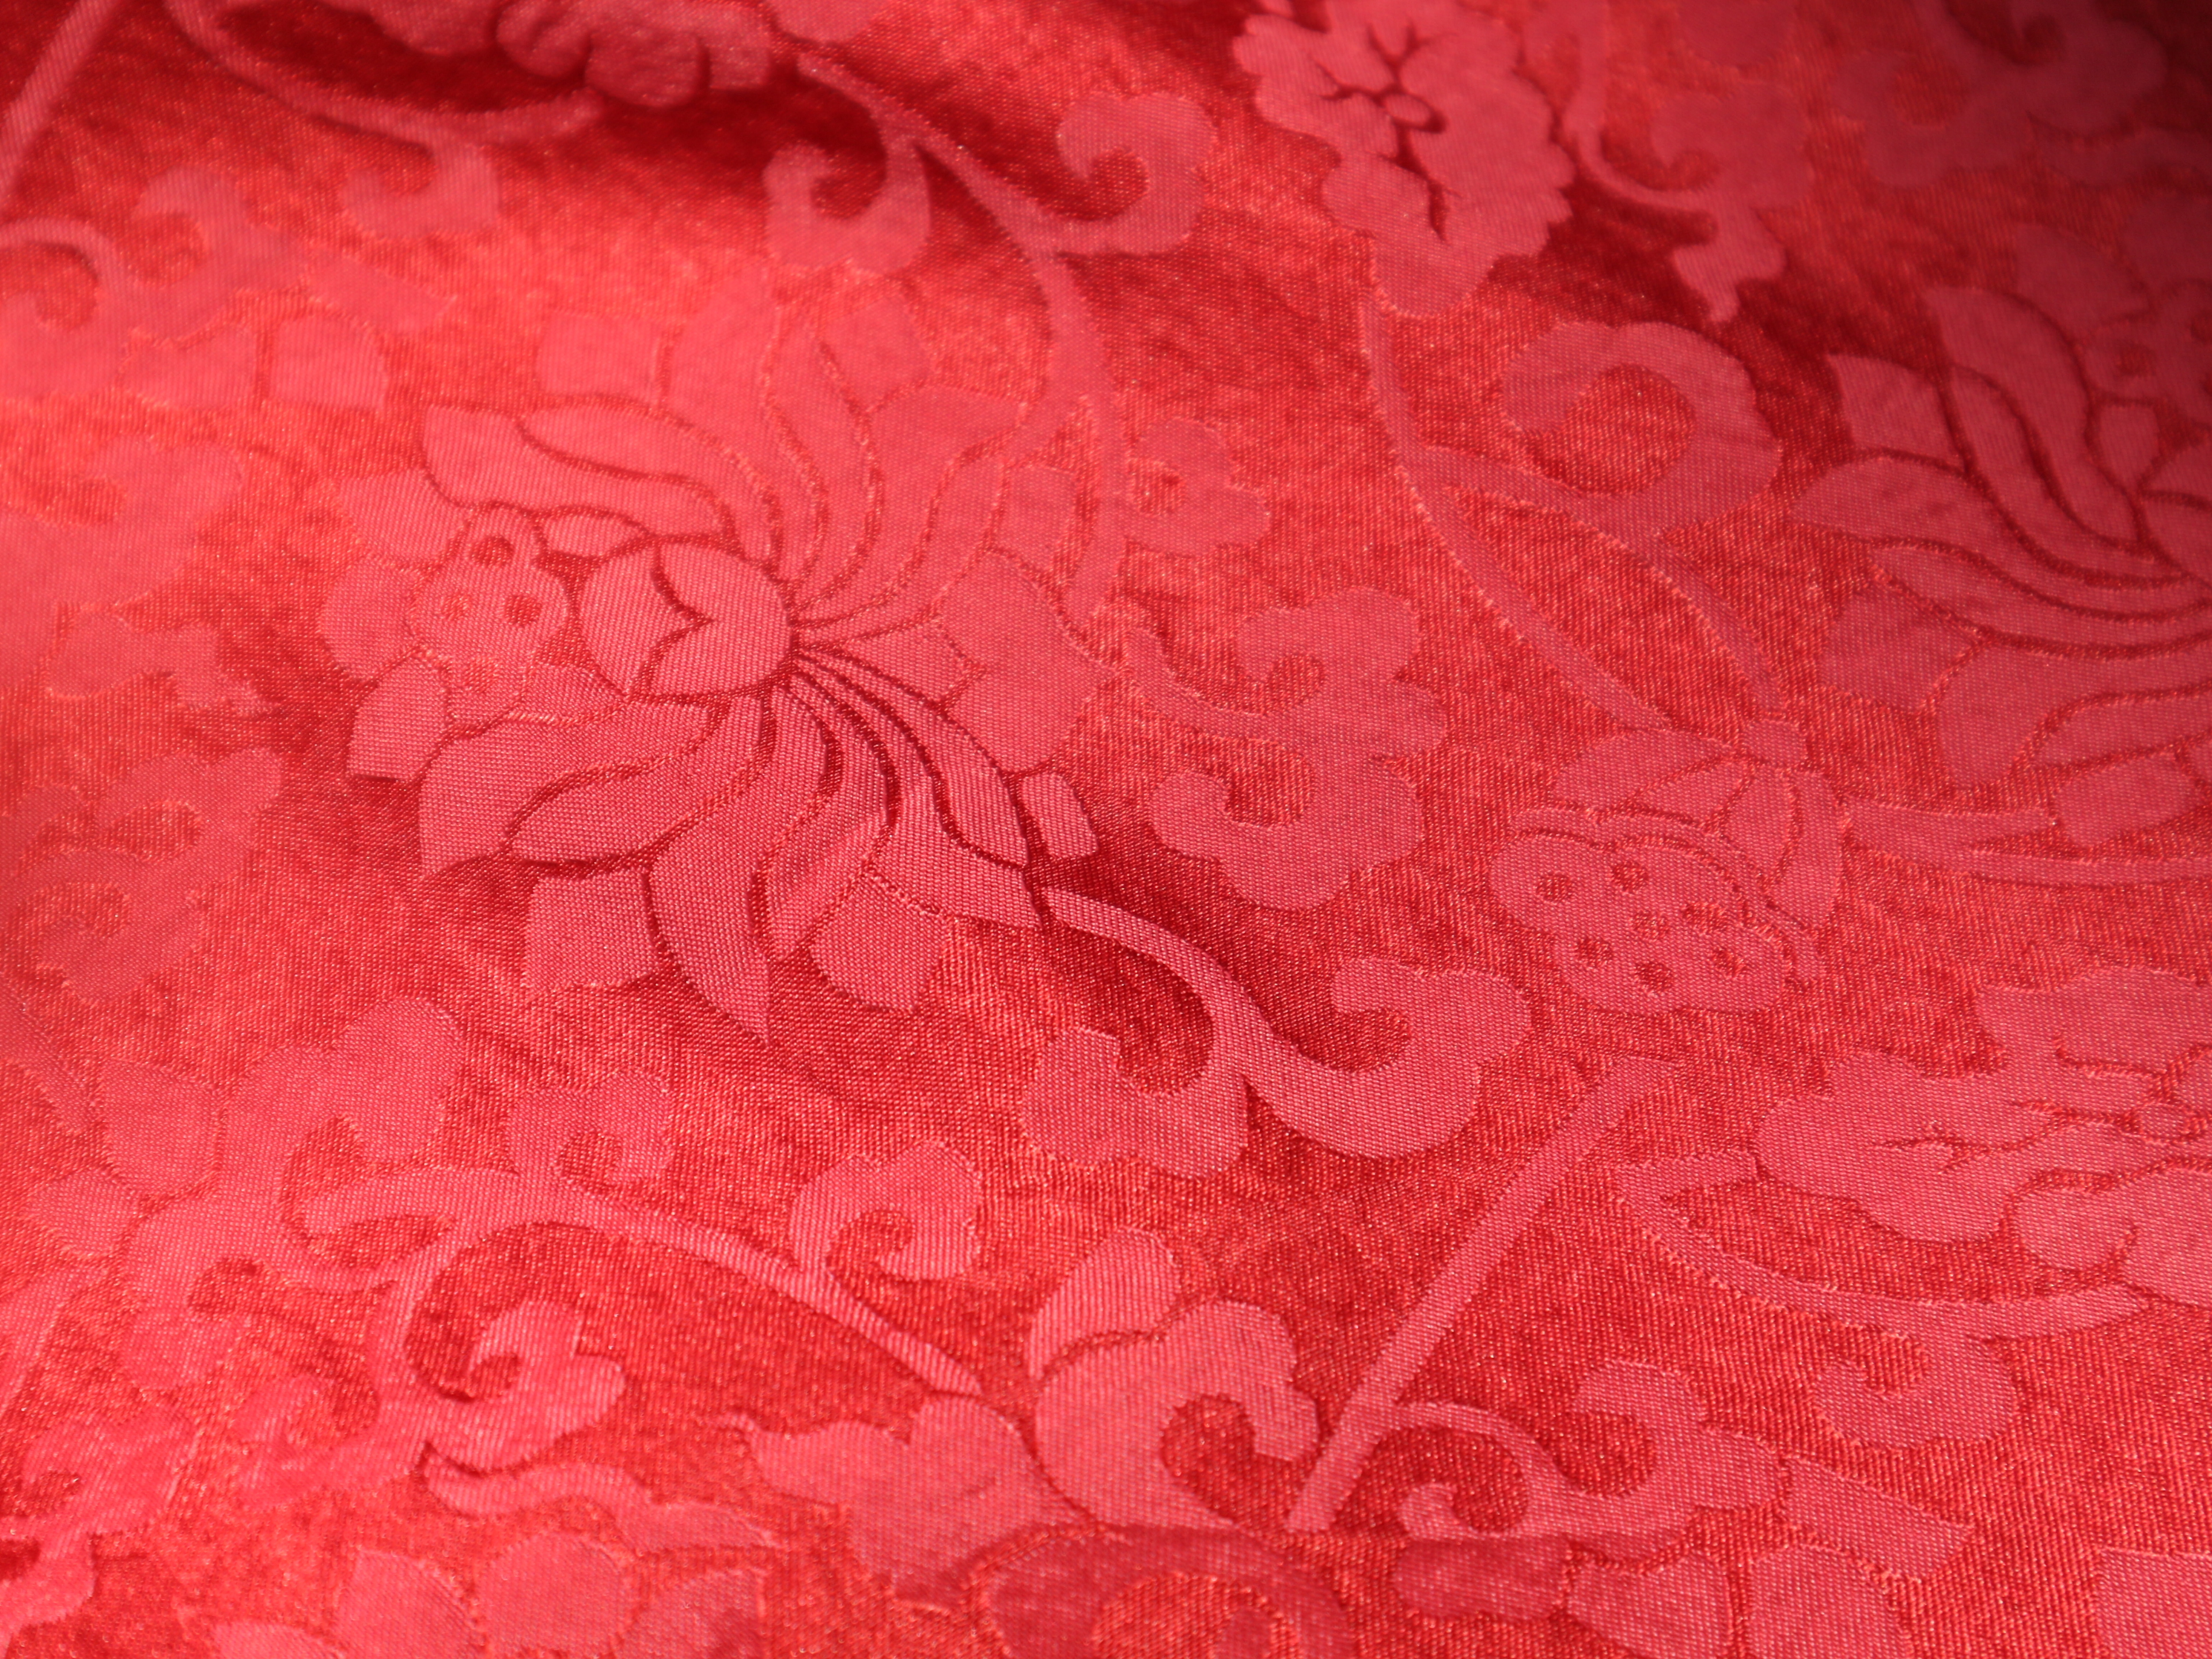 月白 蜜合 杨妃 银鼠……这个展览里 有《红楼梦》的43种颜色